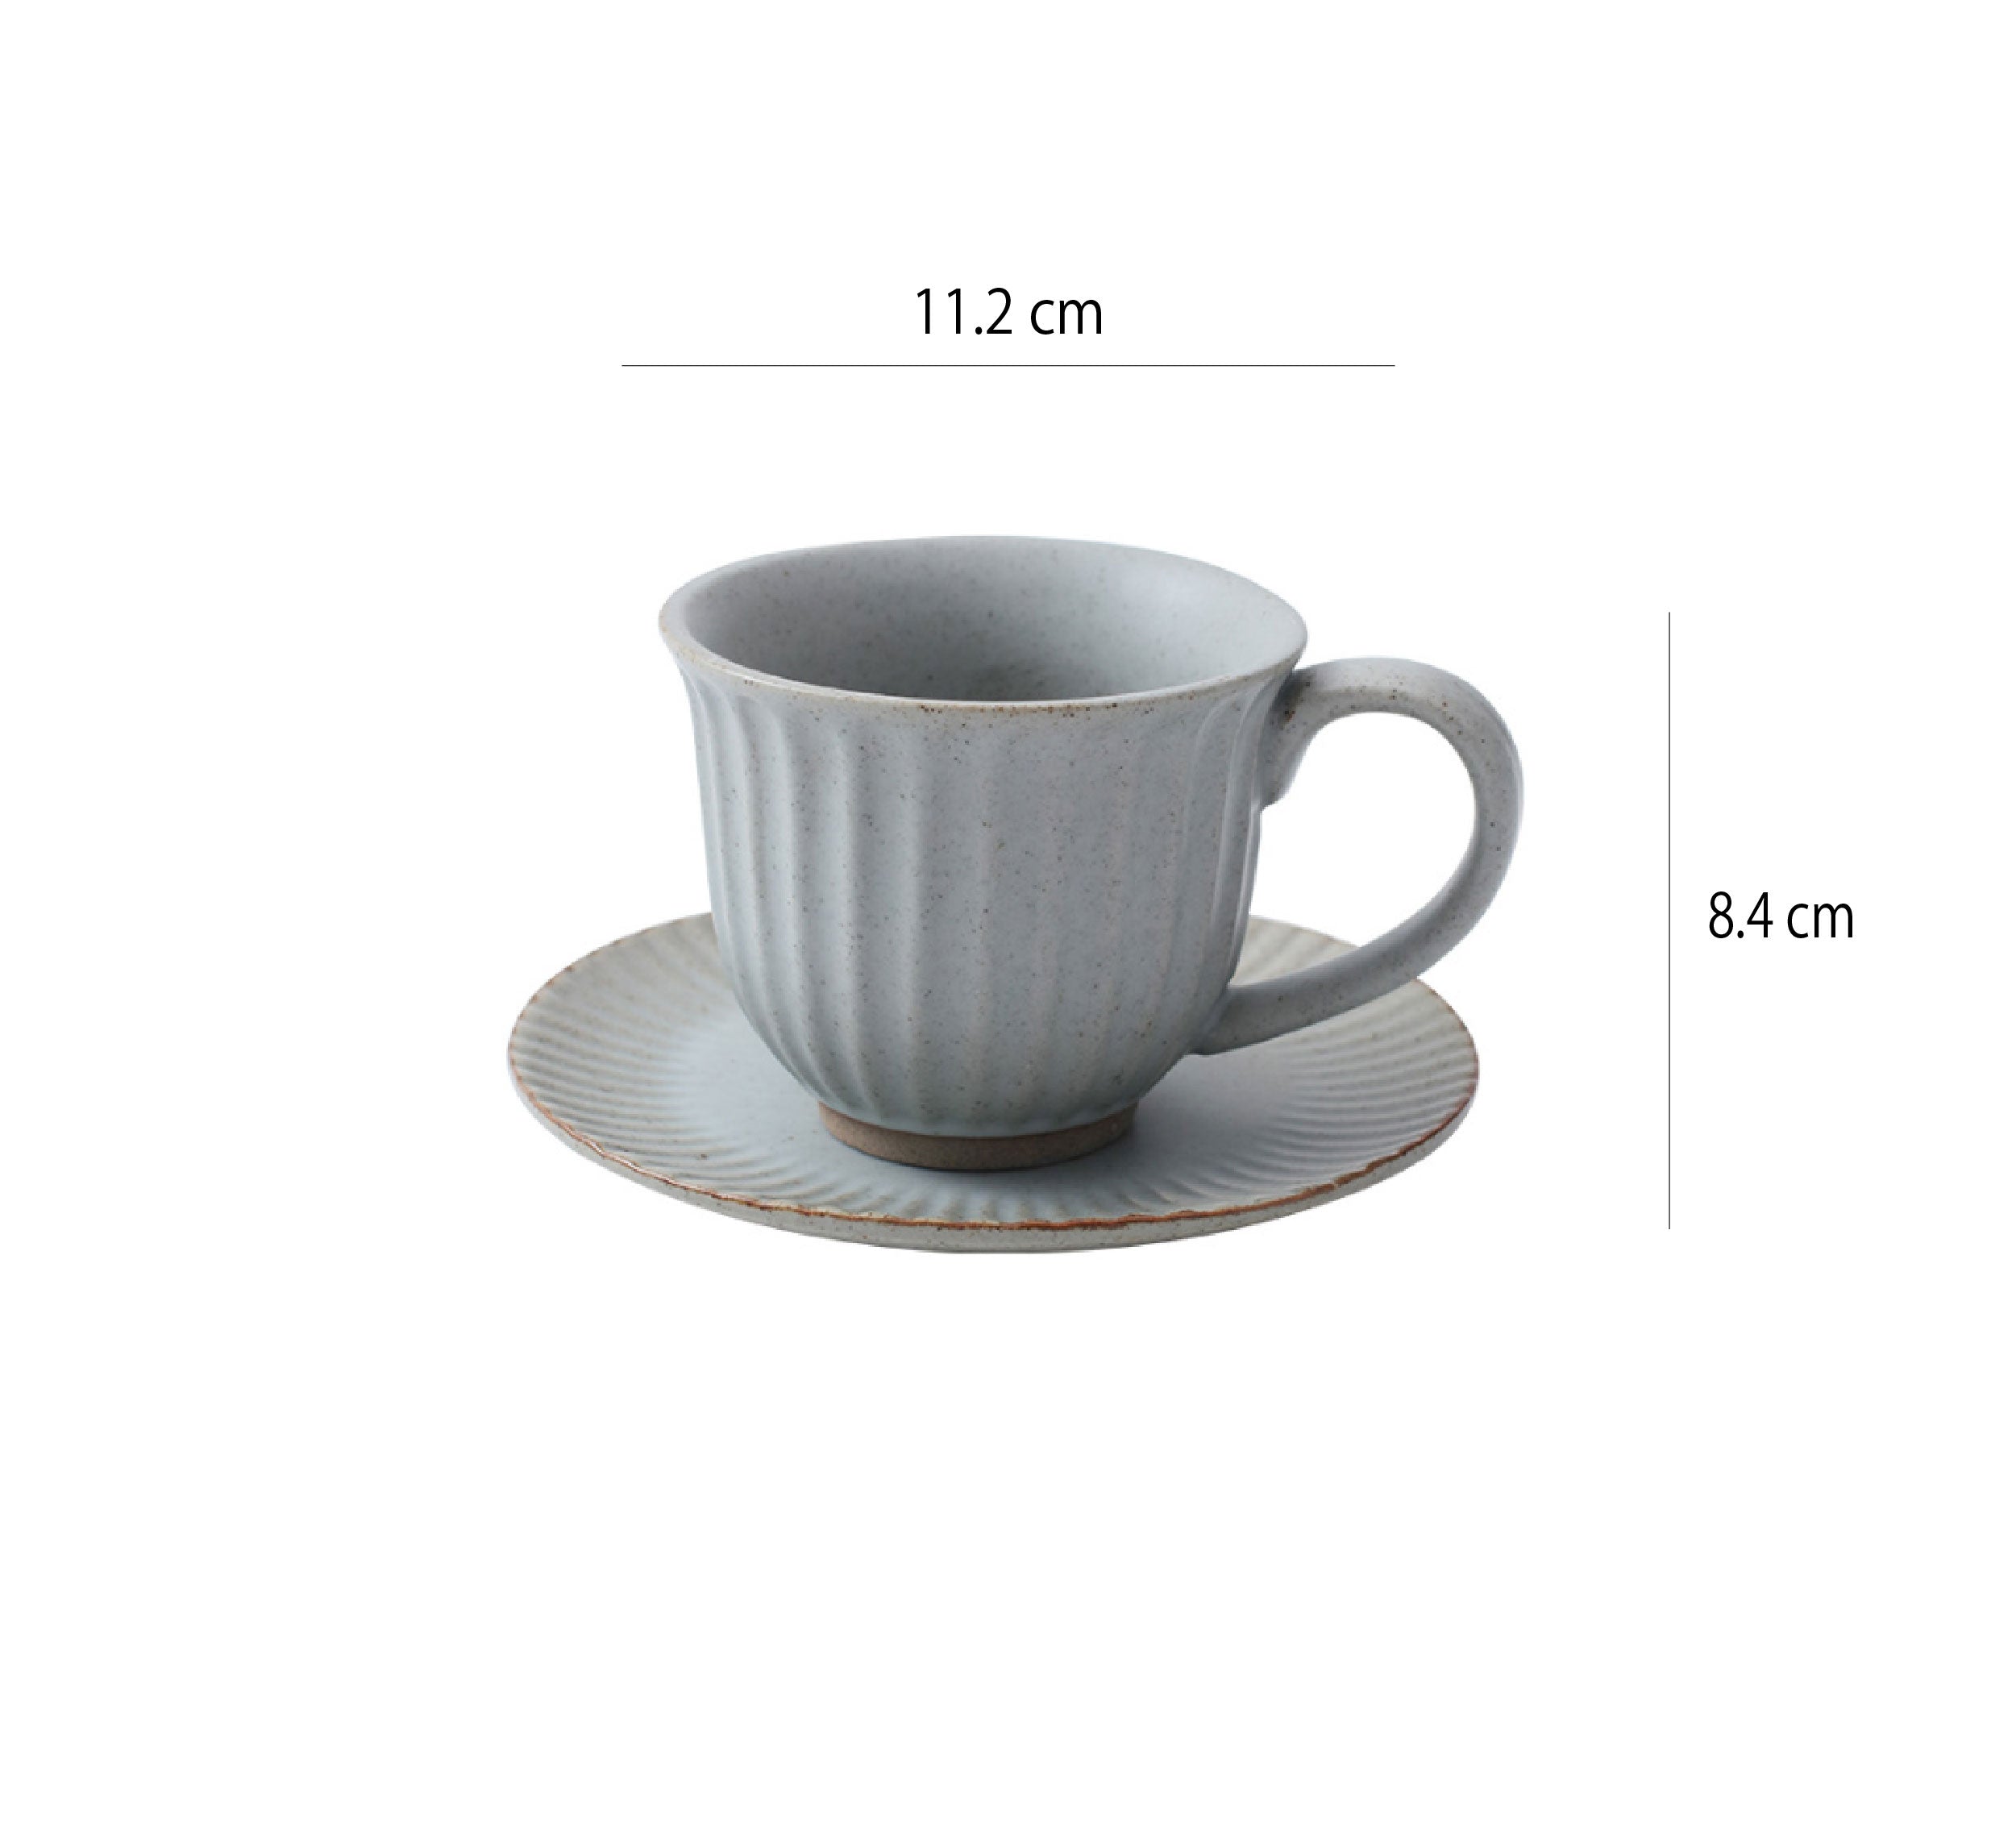 復古手工粗陶馬克杯 | 淺灰 | 11.2 cm 陶瓷 杯盤組